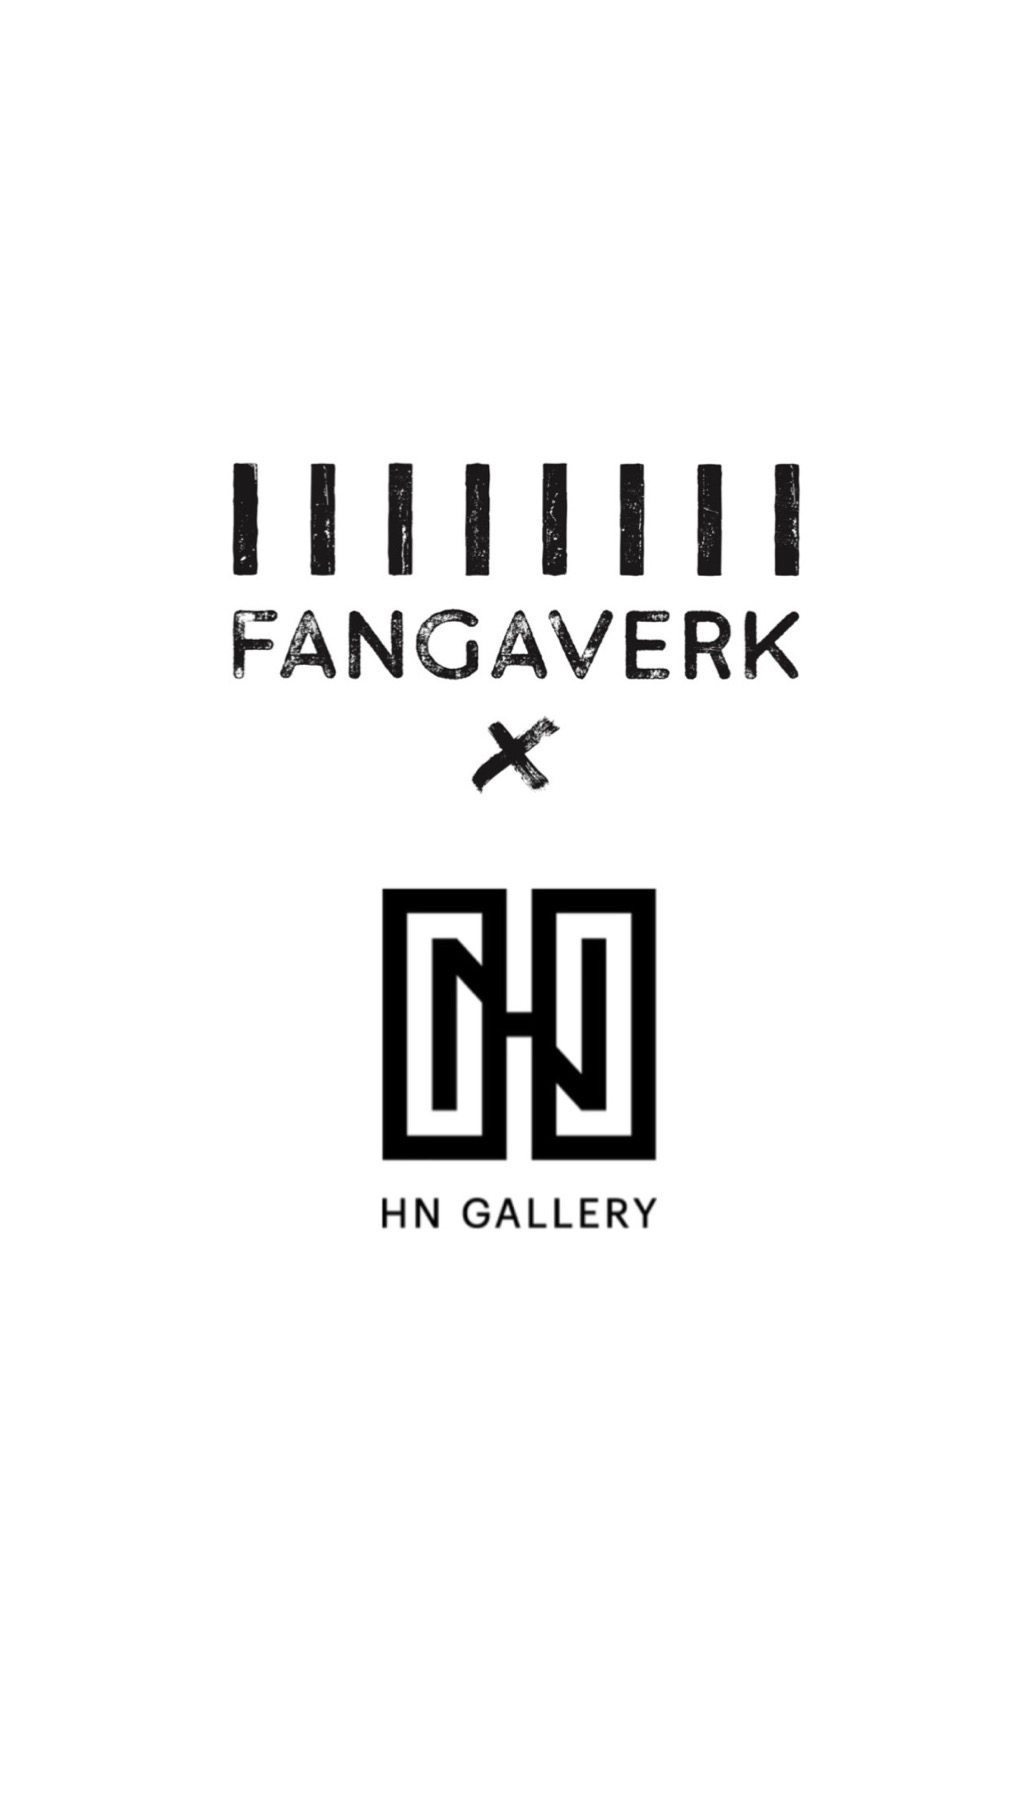 Fangaverk X HN Gallery